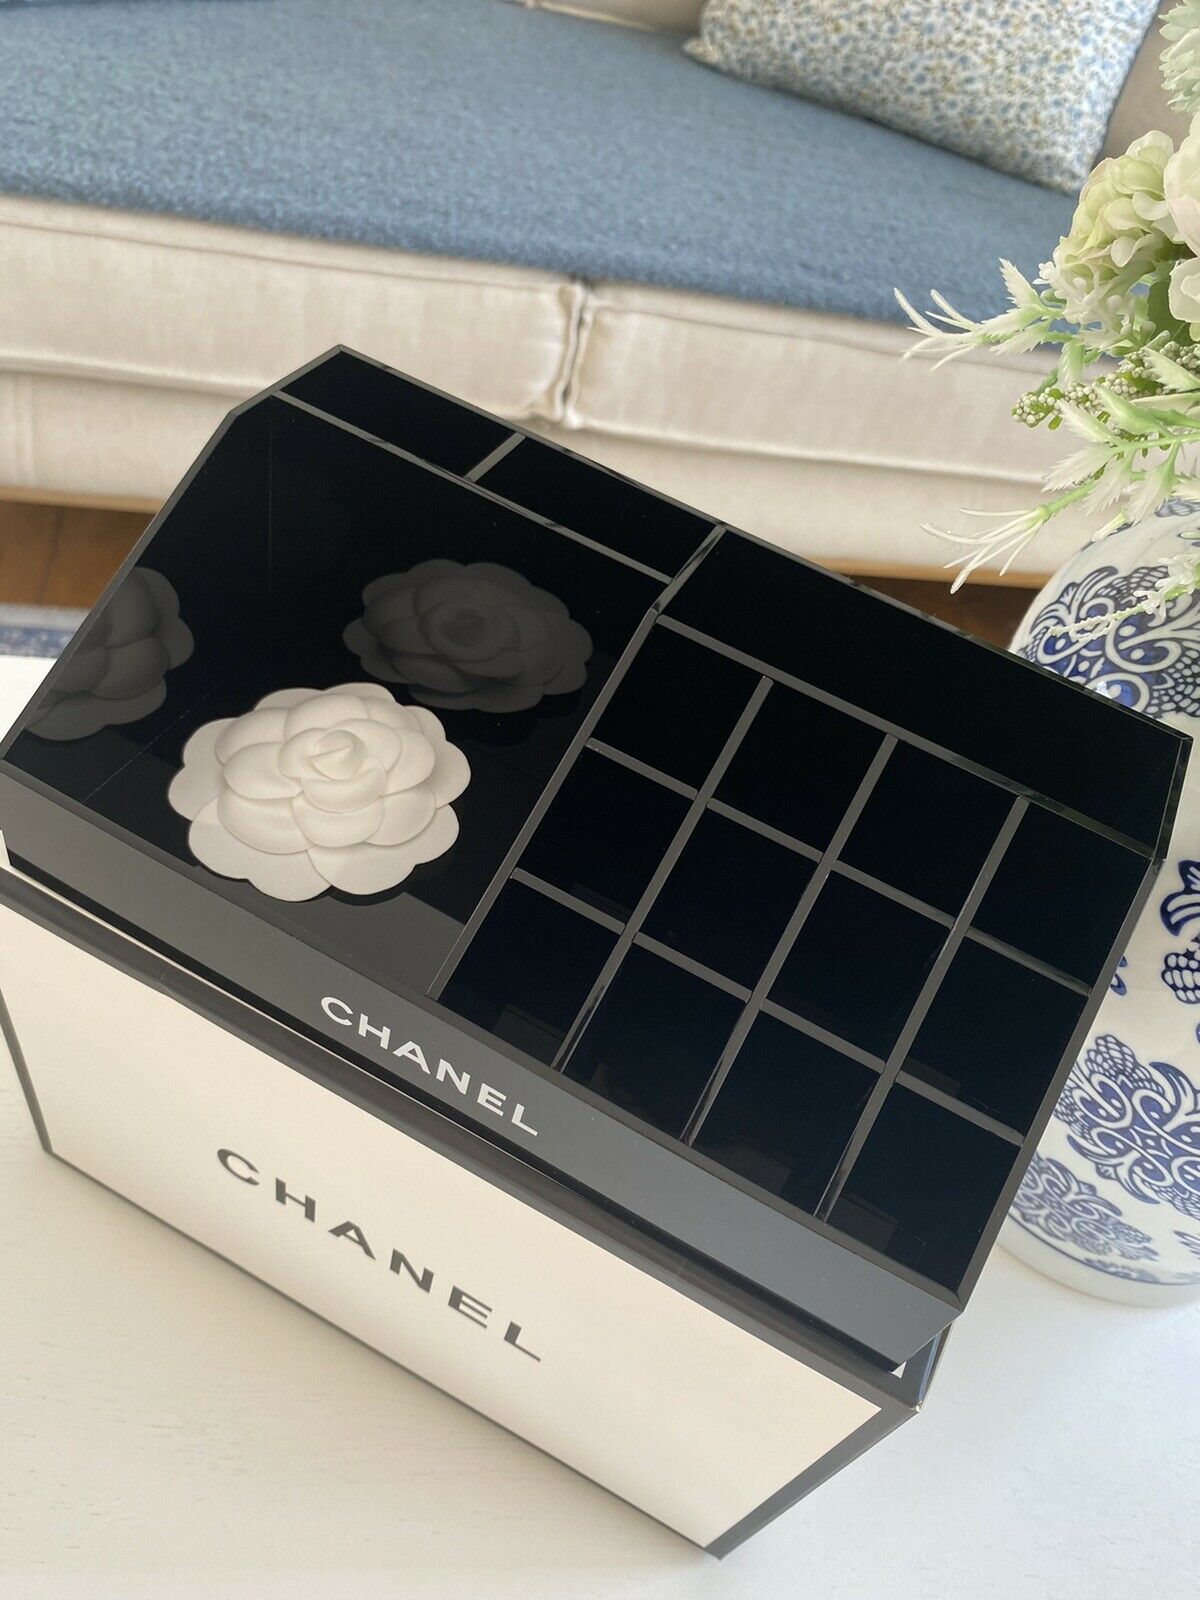 Chanel Makeup Box Organizer